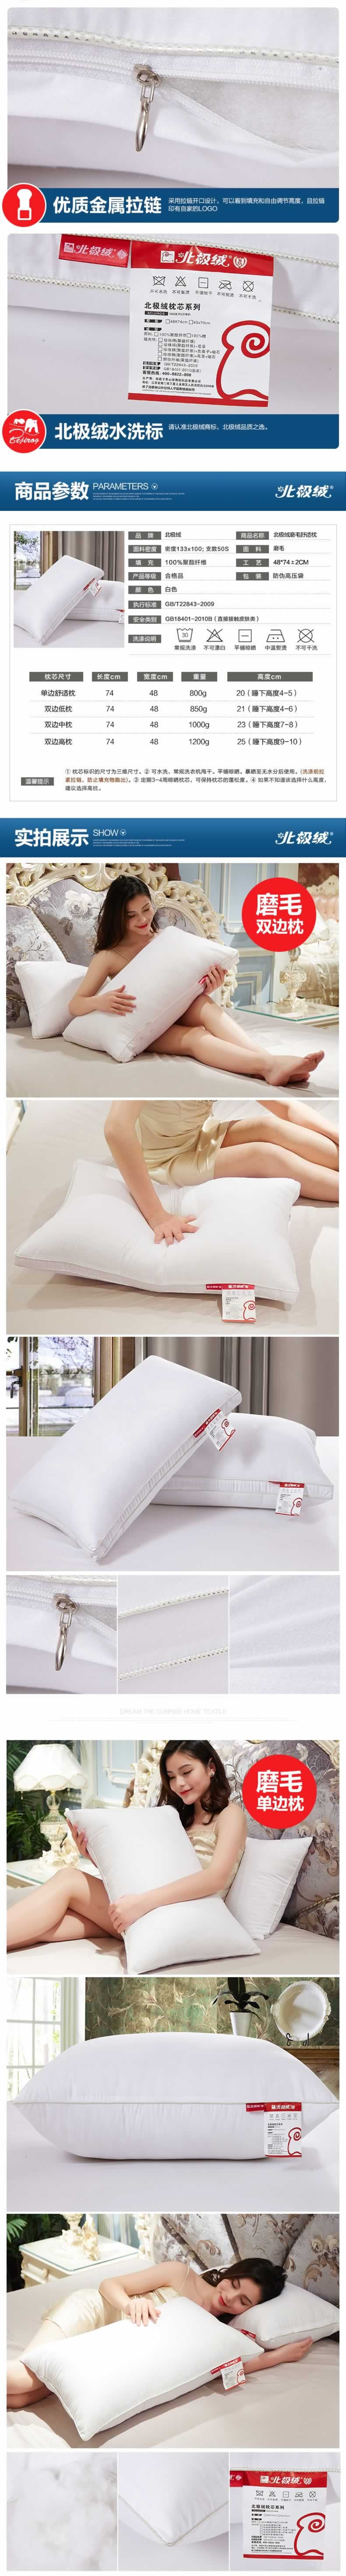 五星级酒店枕芯磨毛舒适枕头芯描述